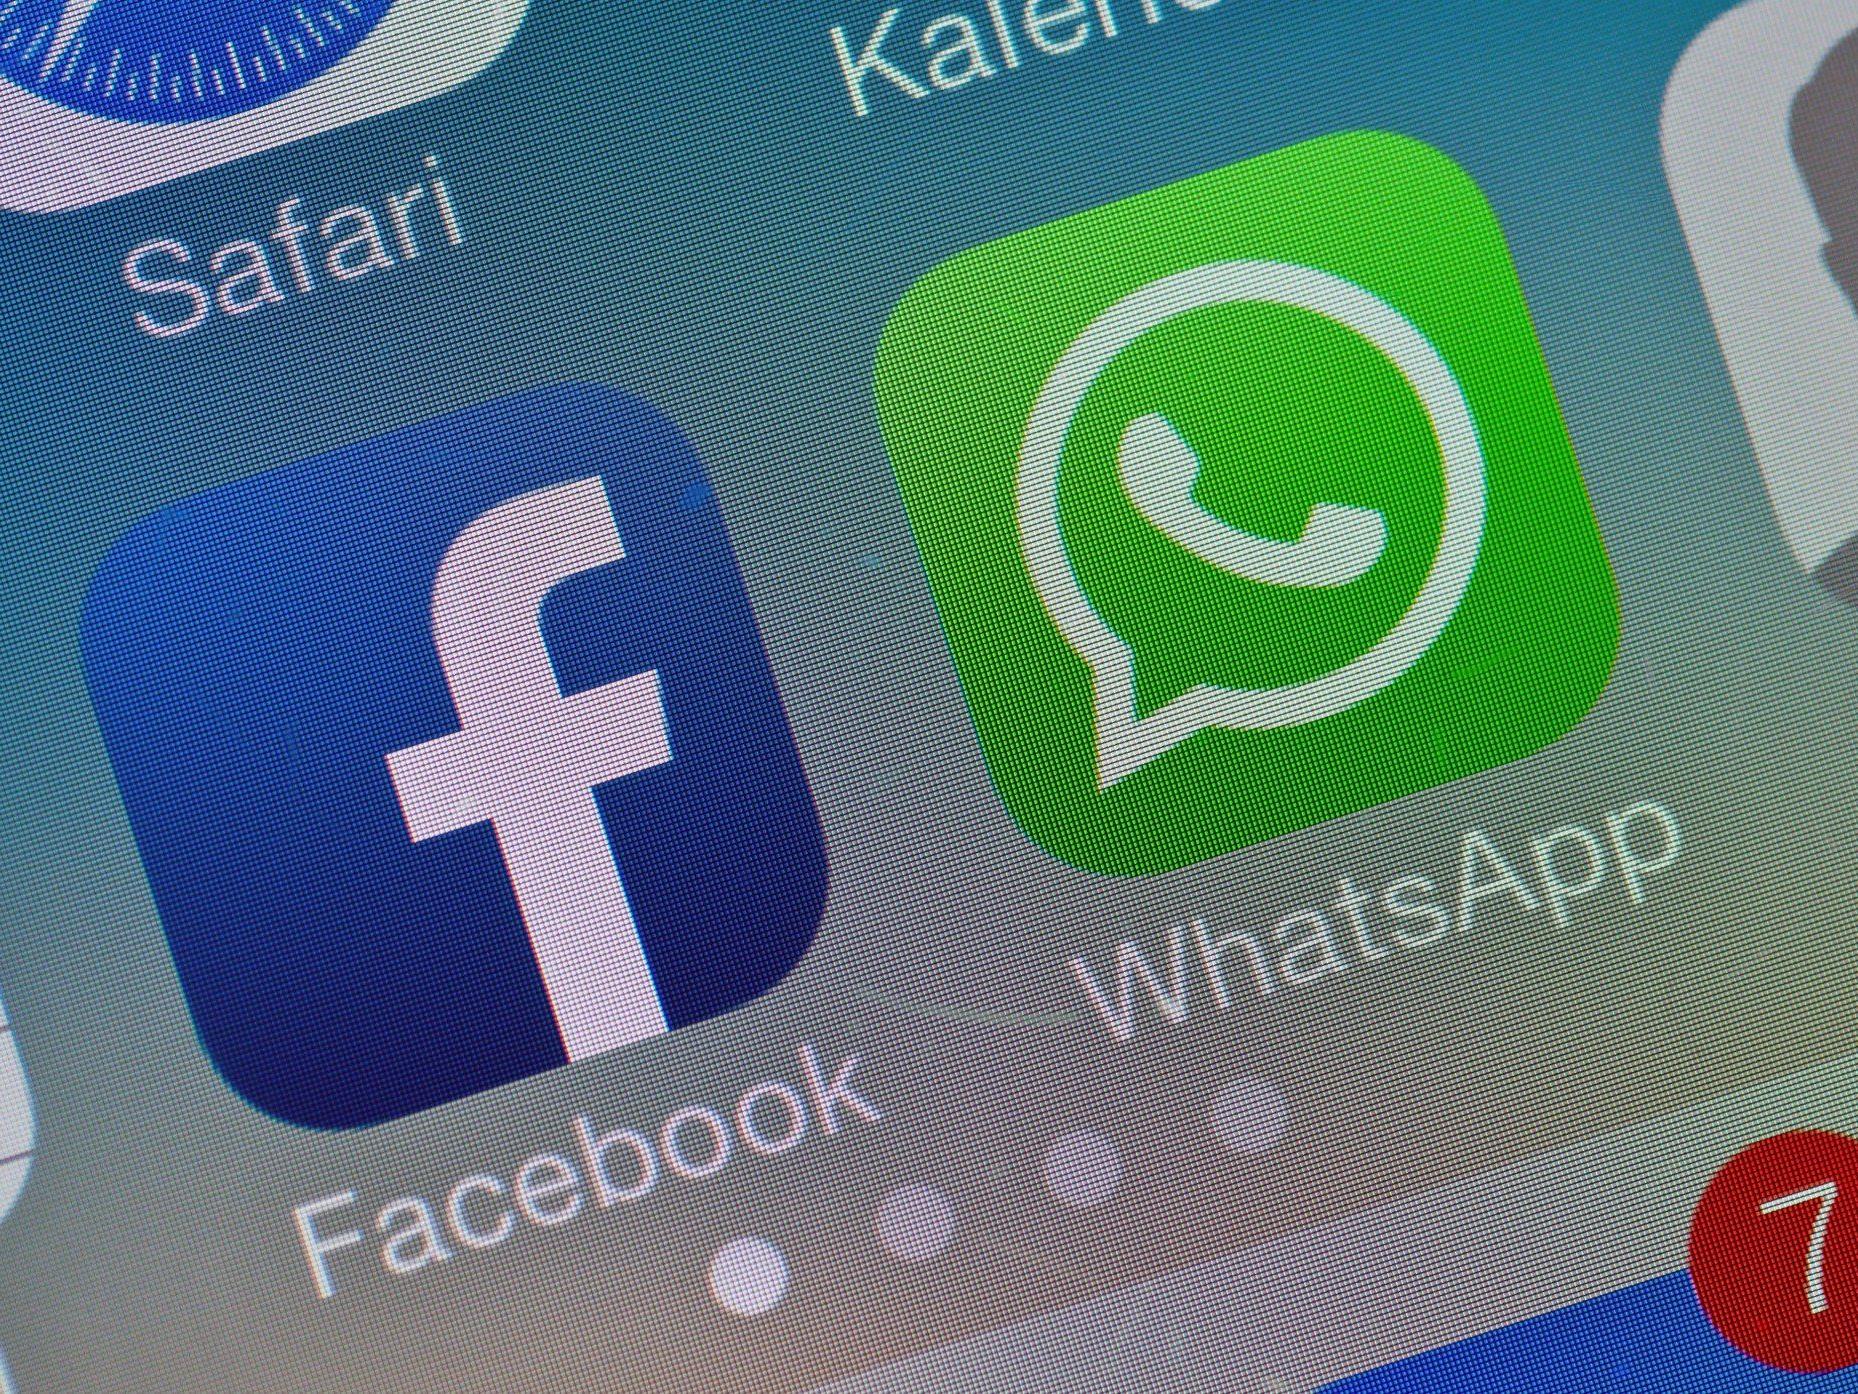 Welche Alternativen gibt es zu Facebook und Whatsapp?